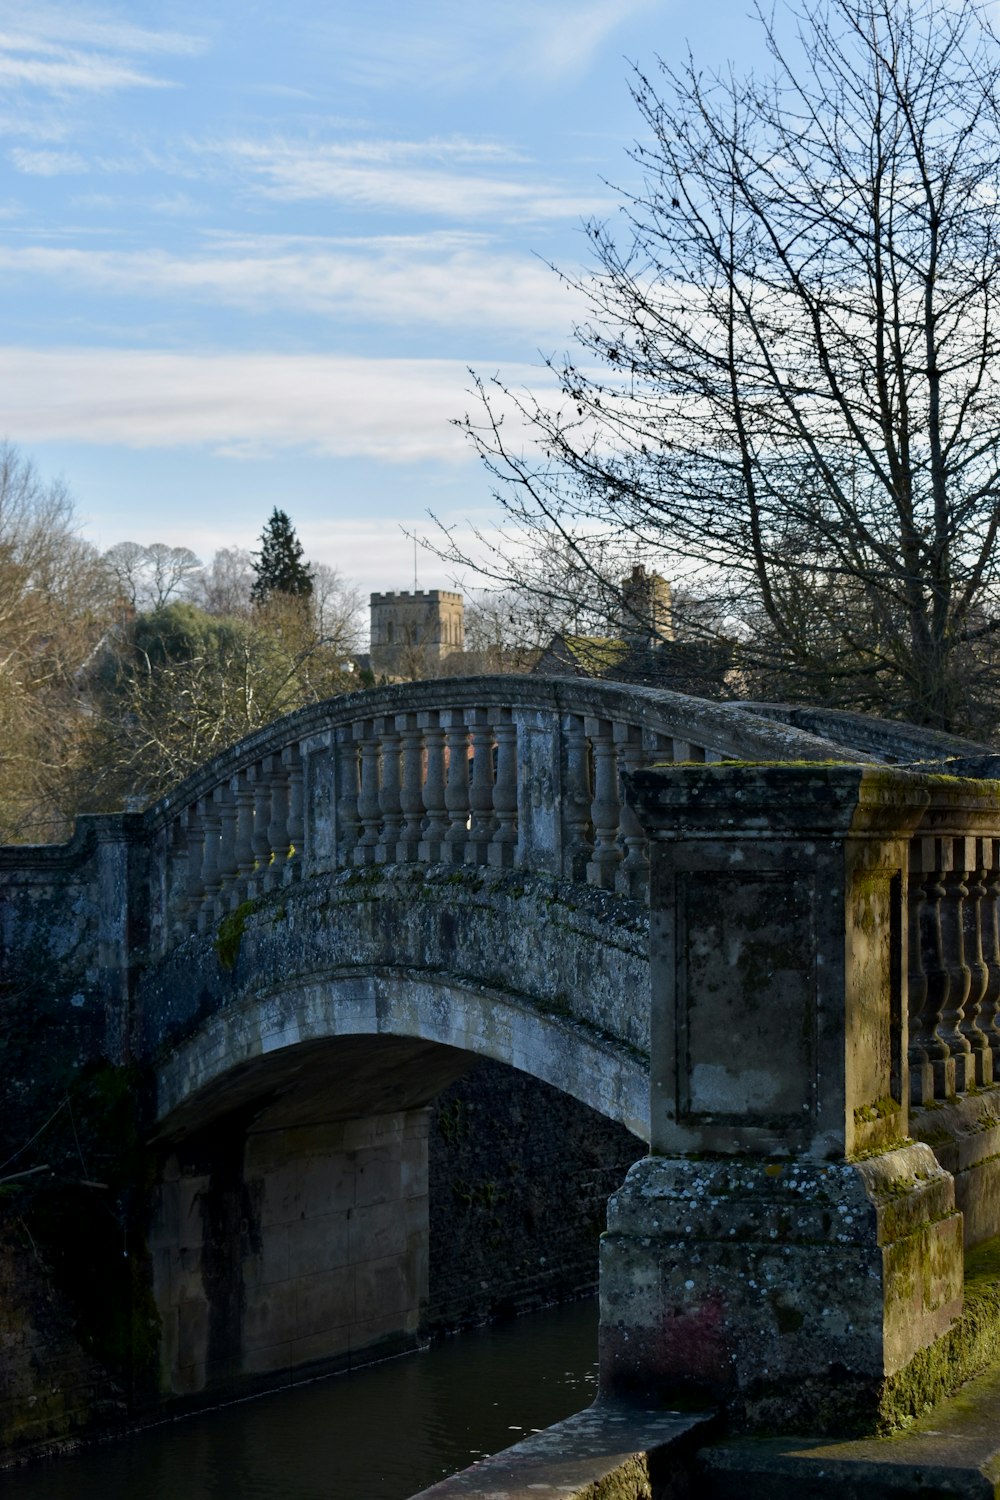 a stone bridge over a small river in a park